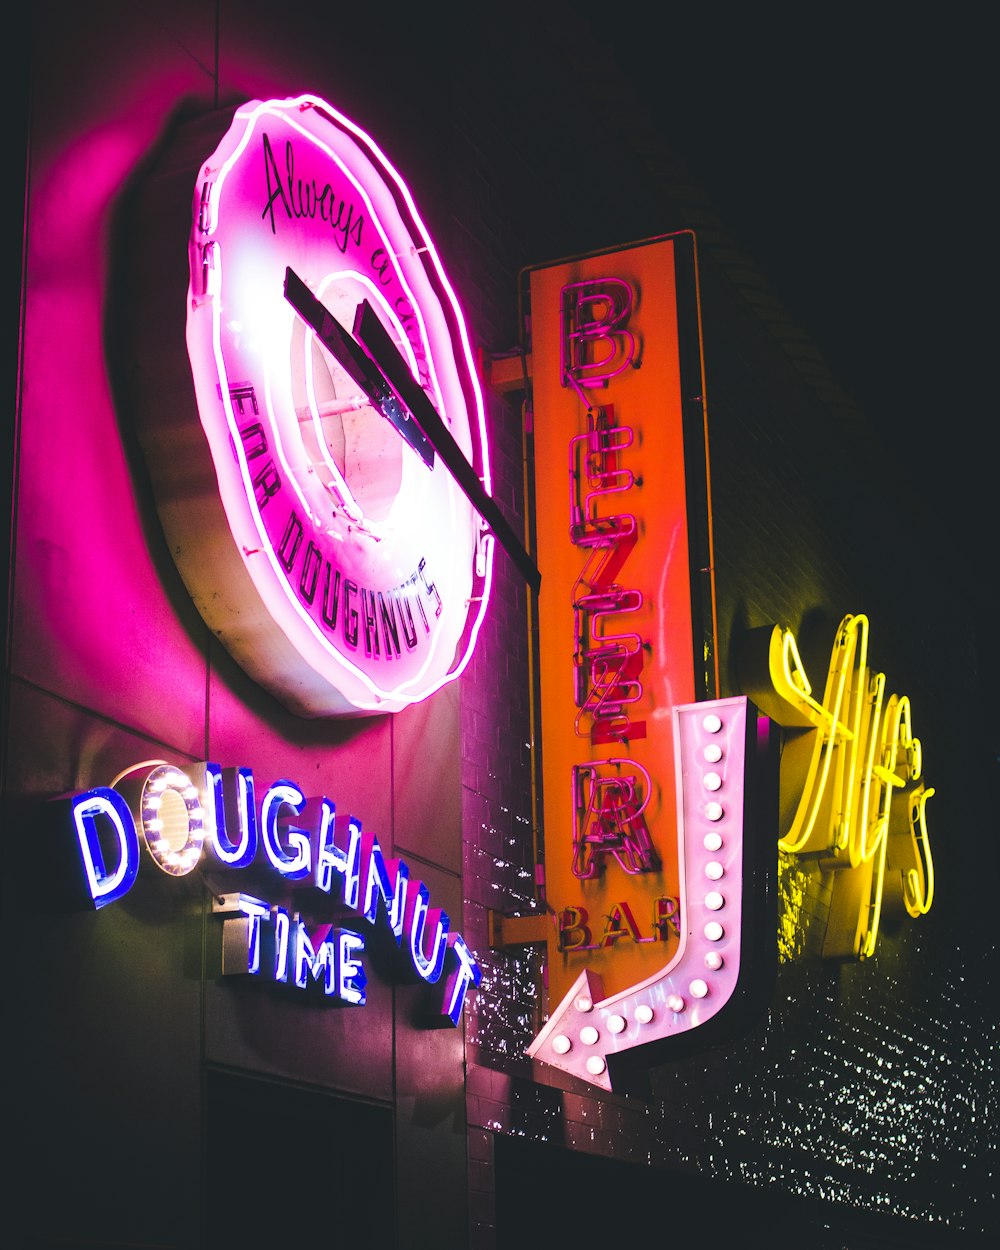 Doughnut Time restaurant